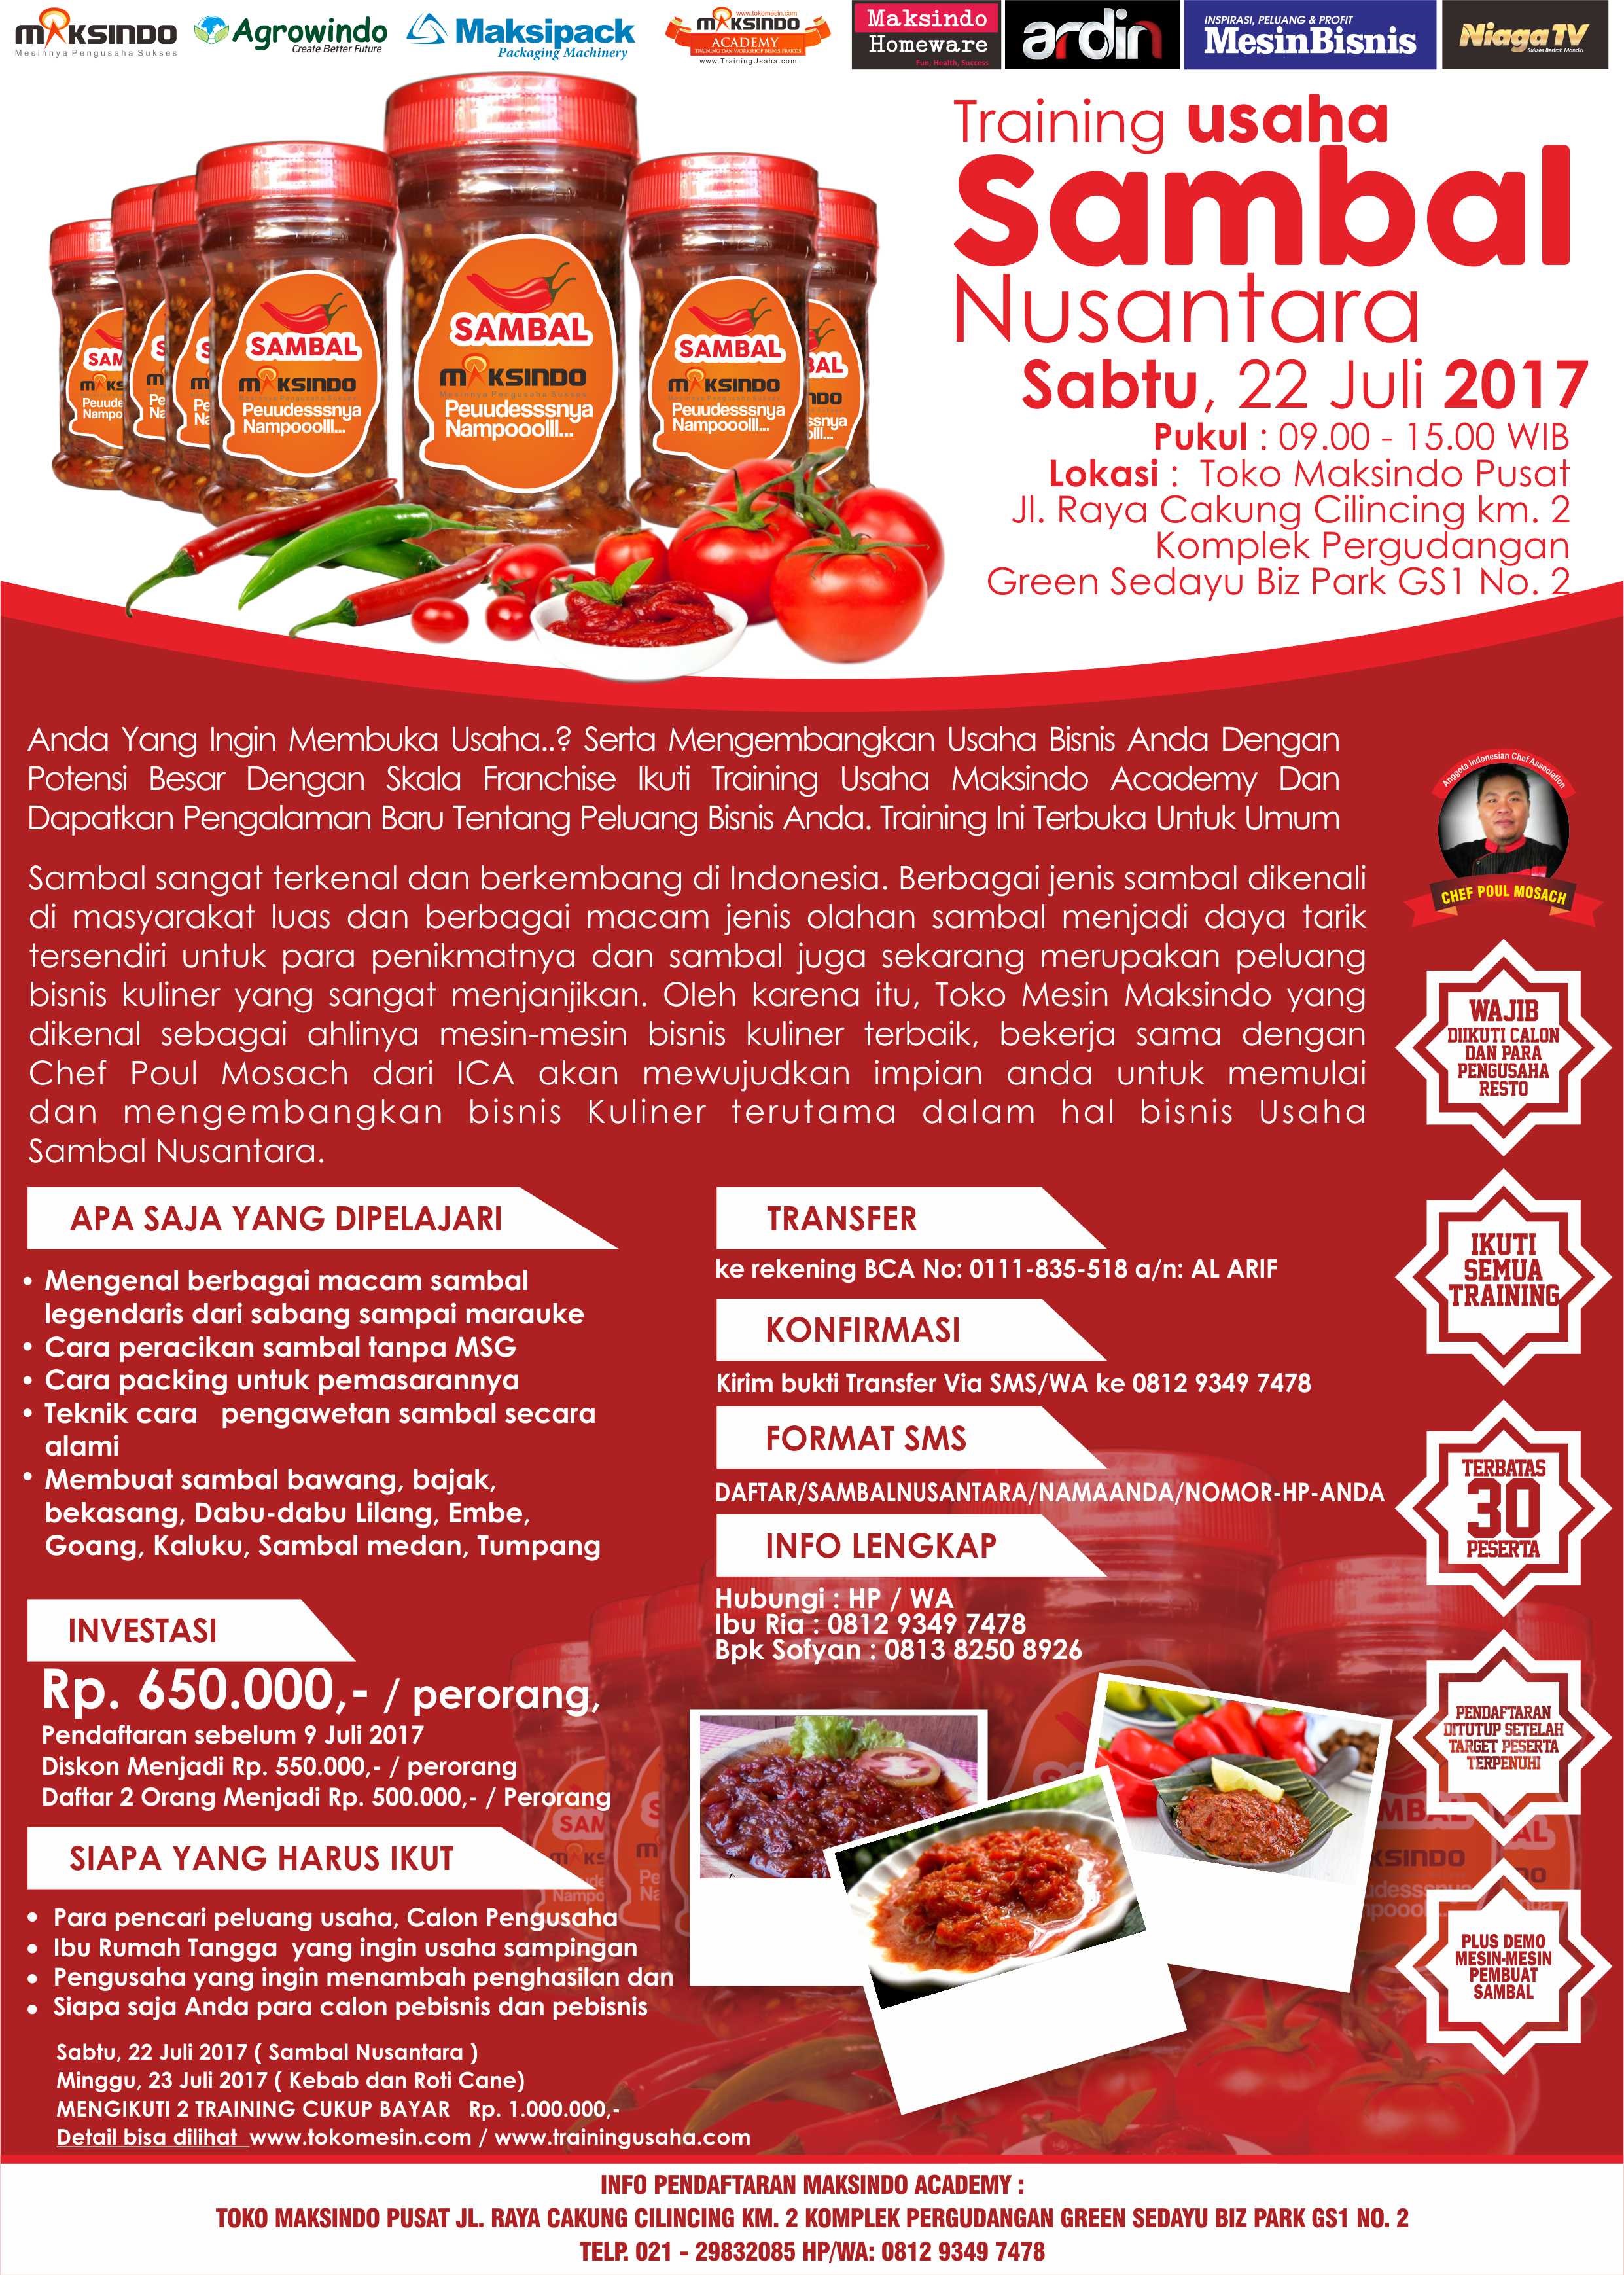 Training Usaha Sambal Nusantara, 22 Juli 2017